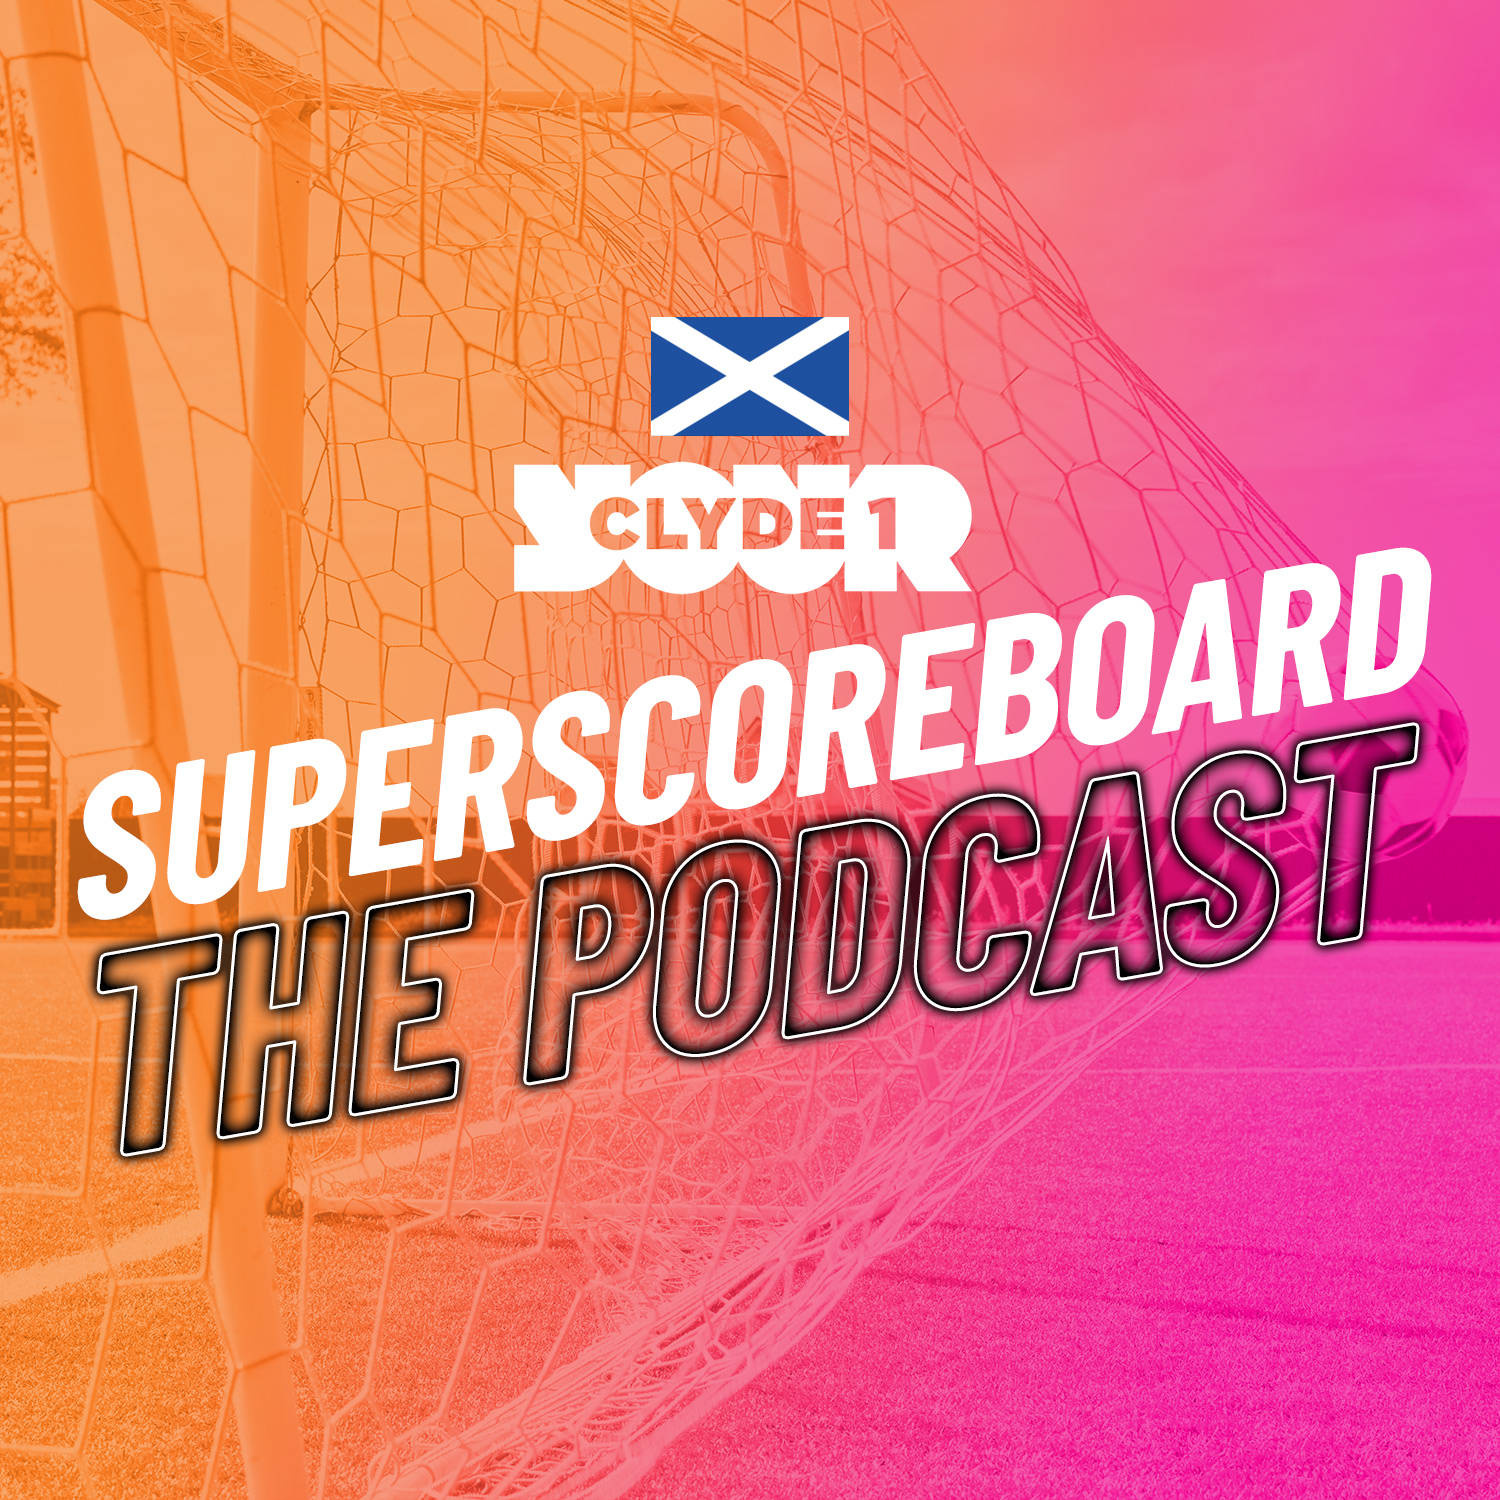 Friday 1st December Clyde 1 Superscoreboard